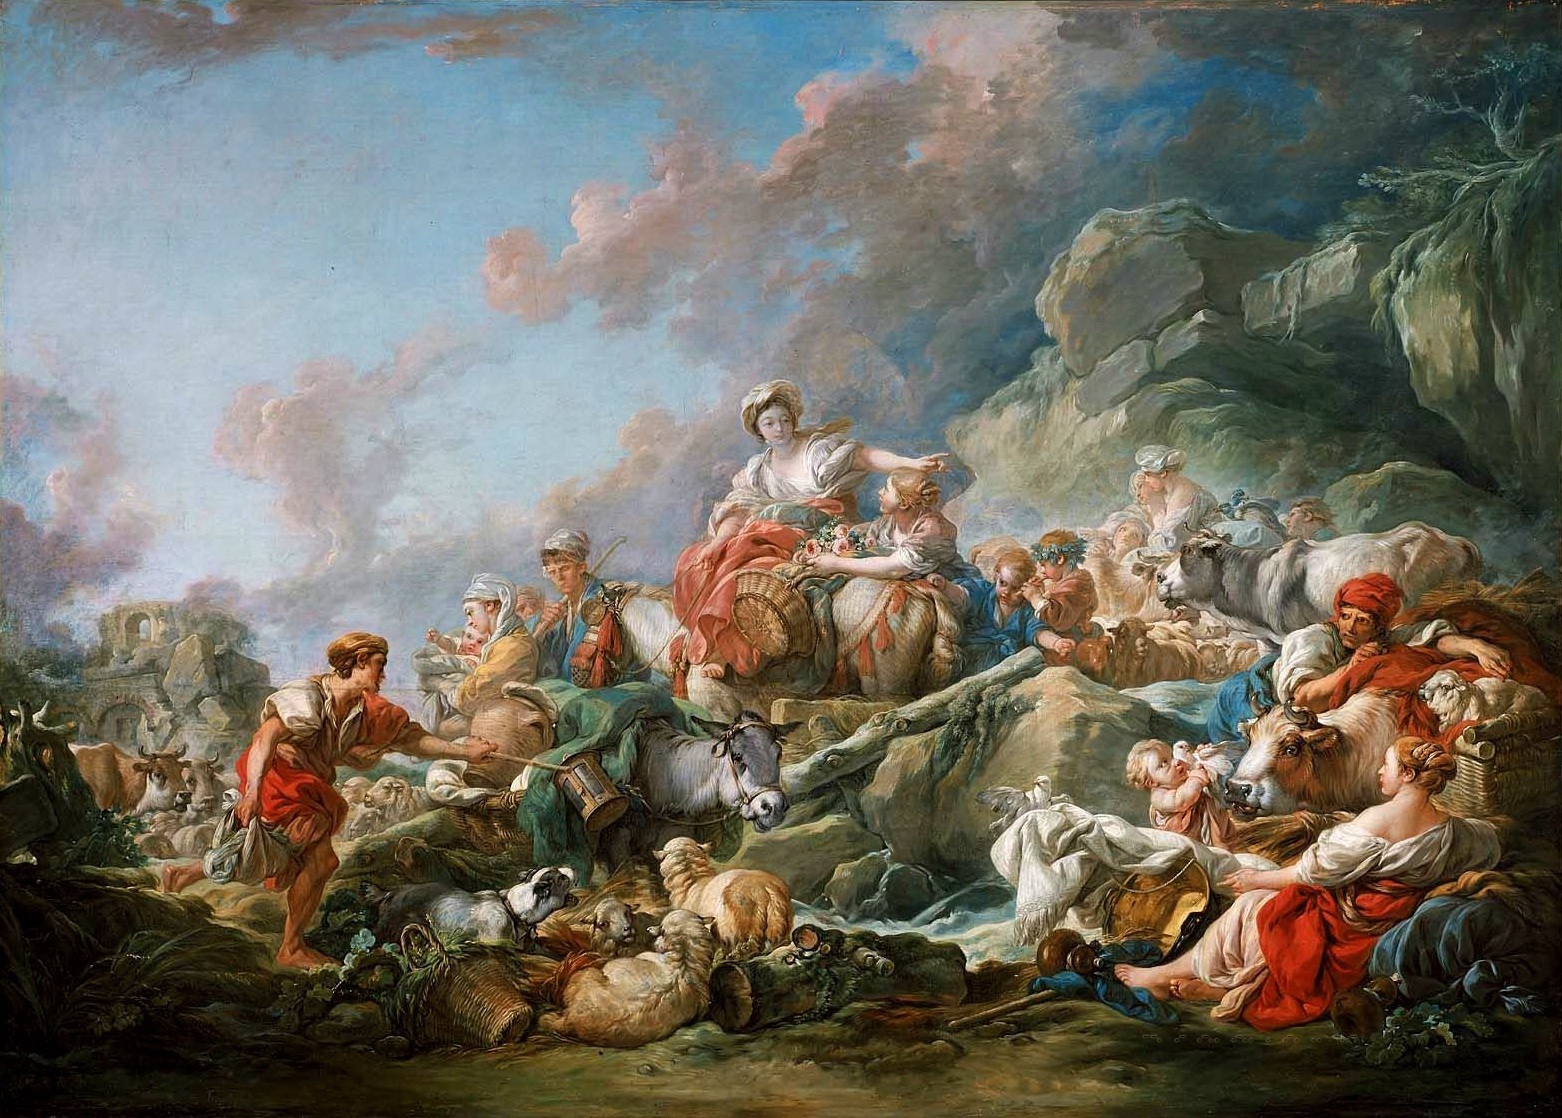 Франсуа буше. "Возвращение с рынка". 1767. Музей искусств, Бостон.